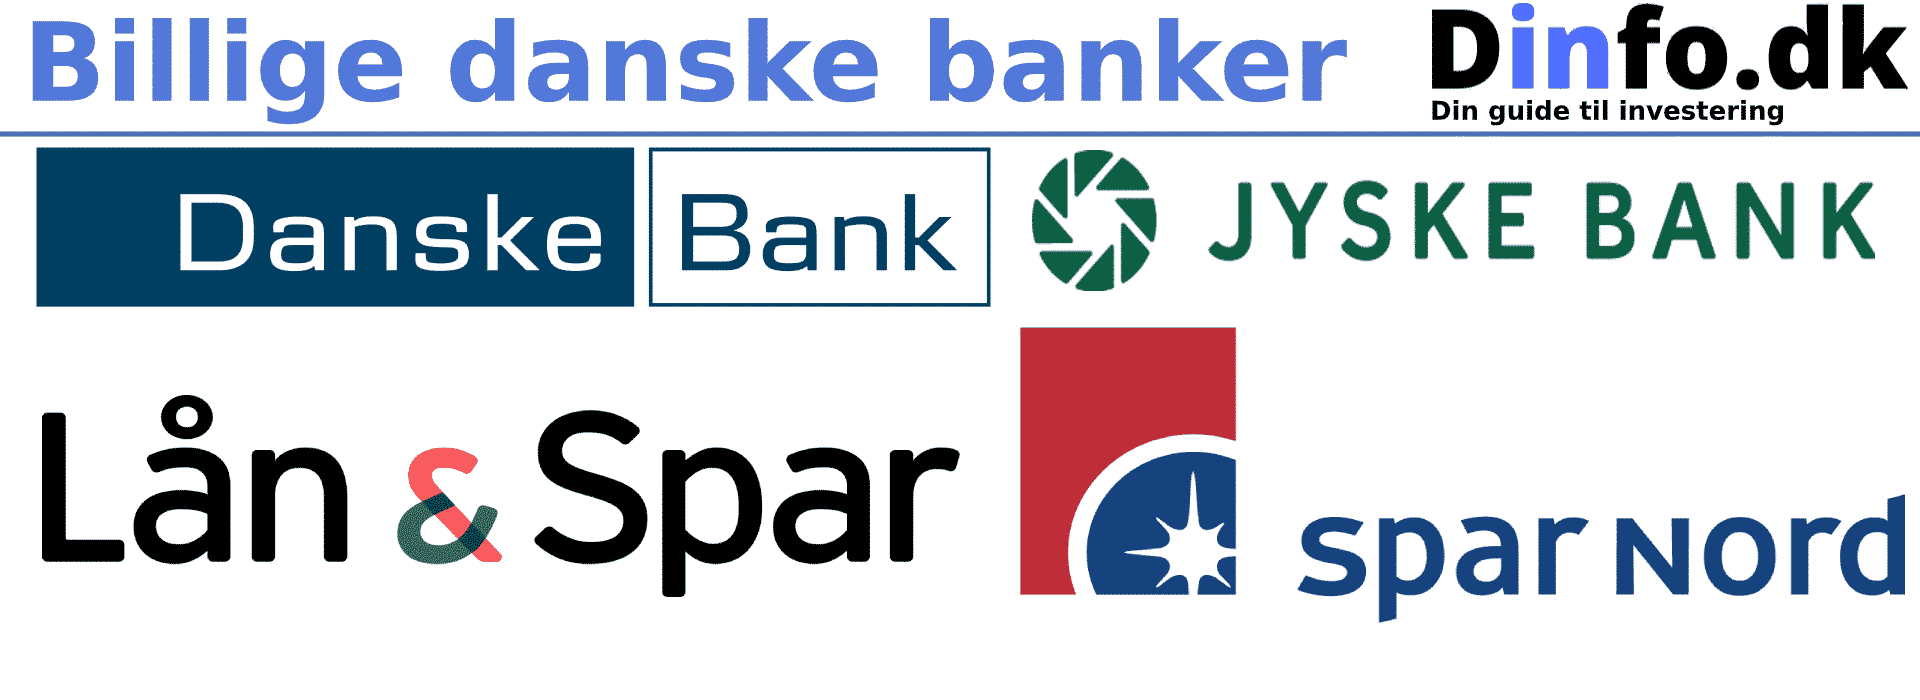 billige danske banker